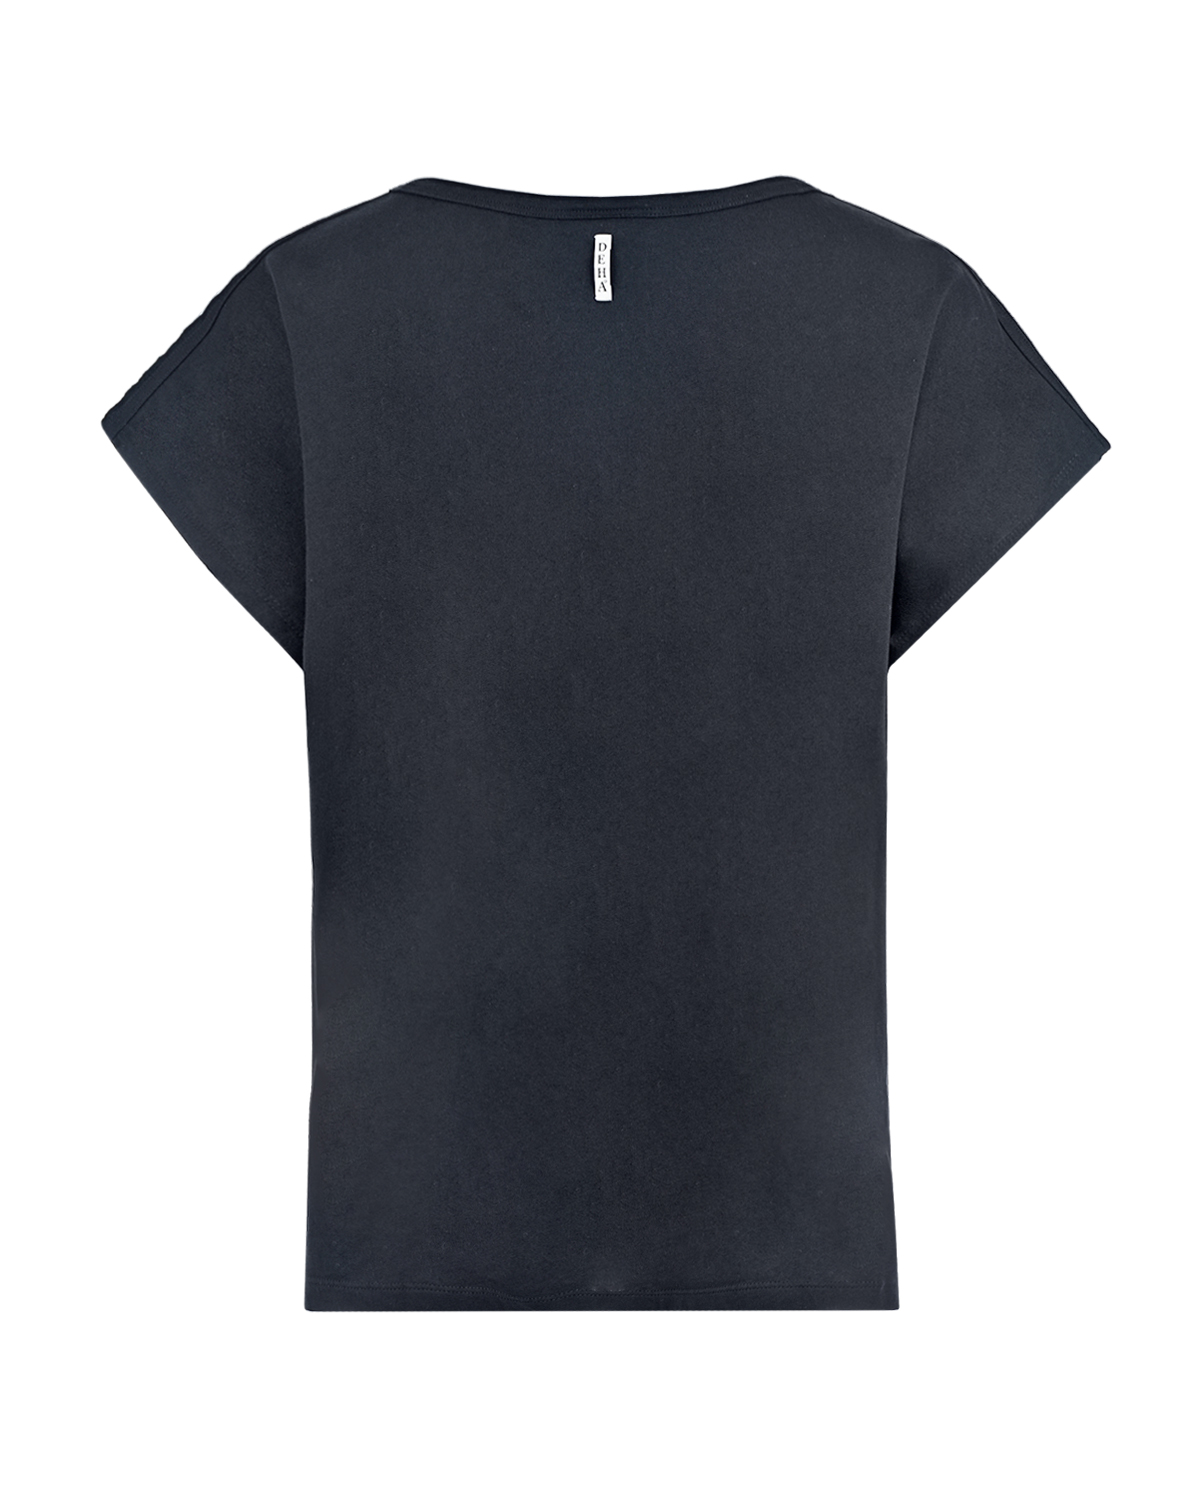 Черная футболка свободного кроя с логотипом Deha, размер 40, цвет черный - фото 2